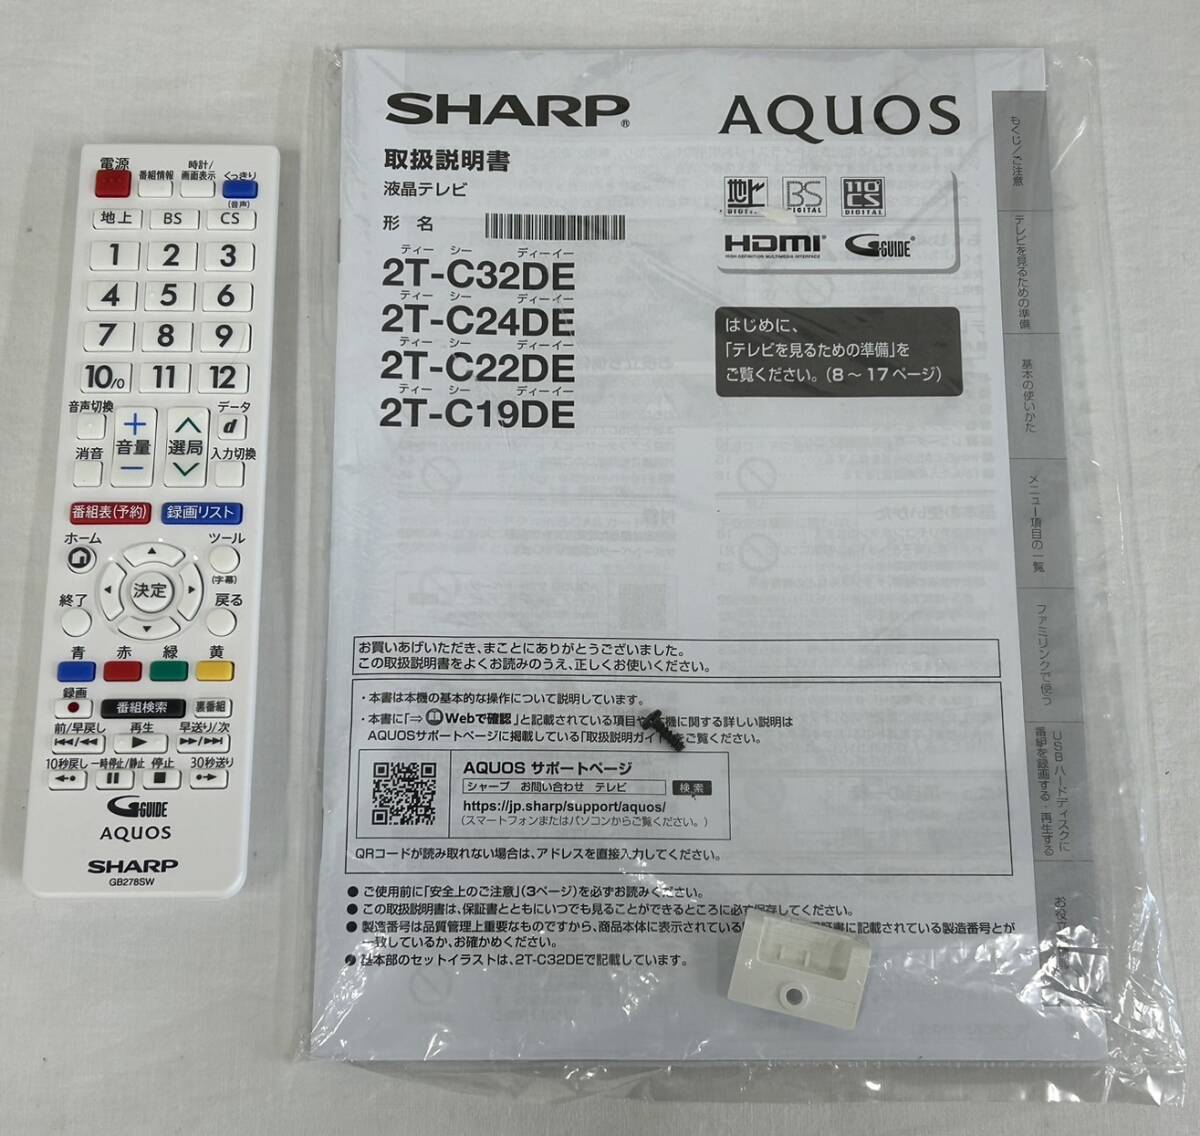 LB100117(061)-313/SK5000[ Nagoya из товары для дома рейс кроме того, получение ]SHARP sharp AQUOS жидкокристаллический телевизор 2T-C19DE 2020 год производства W